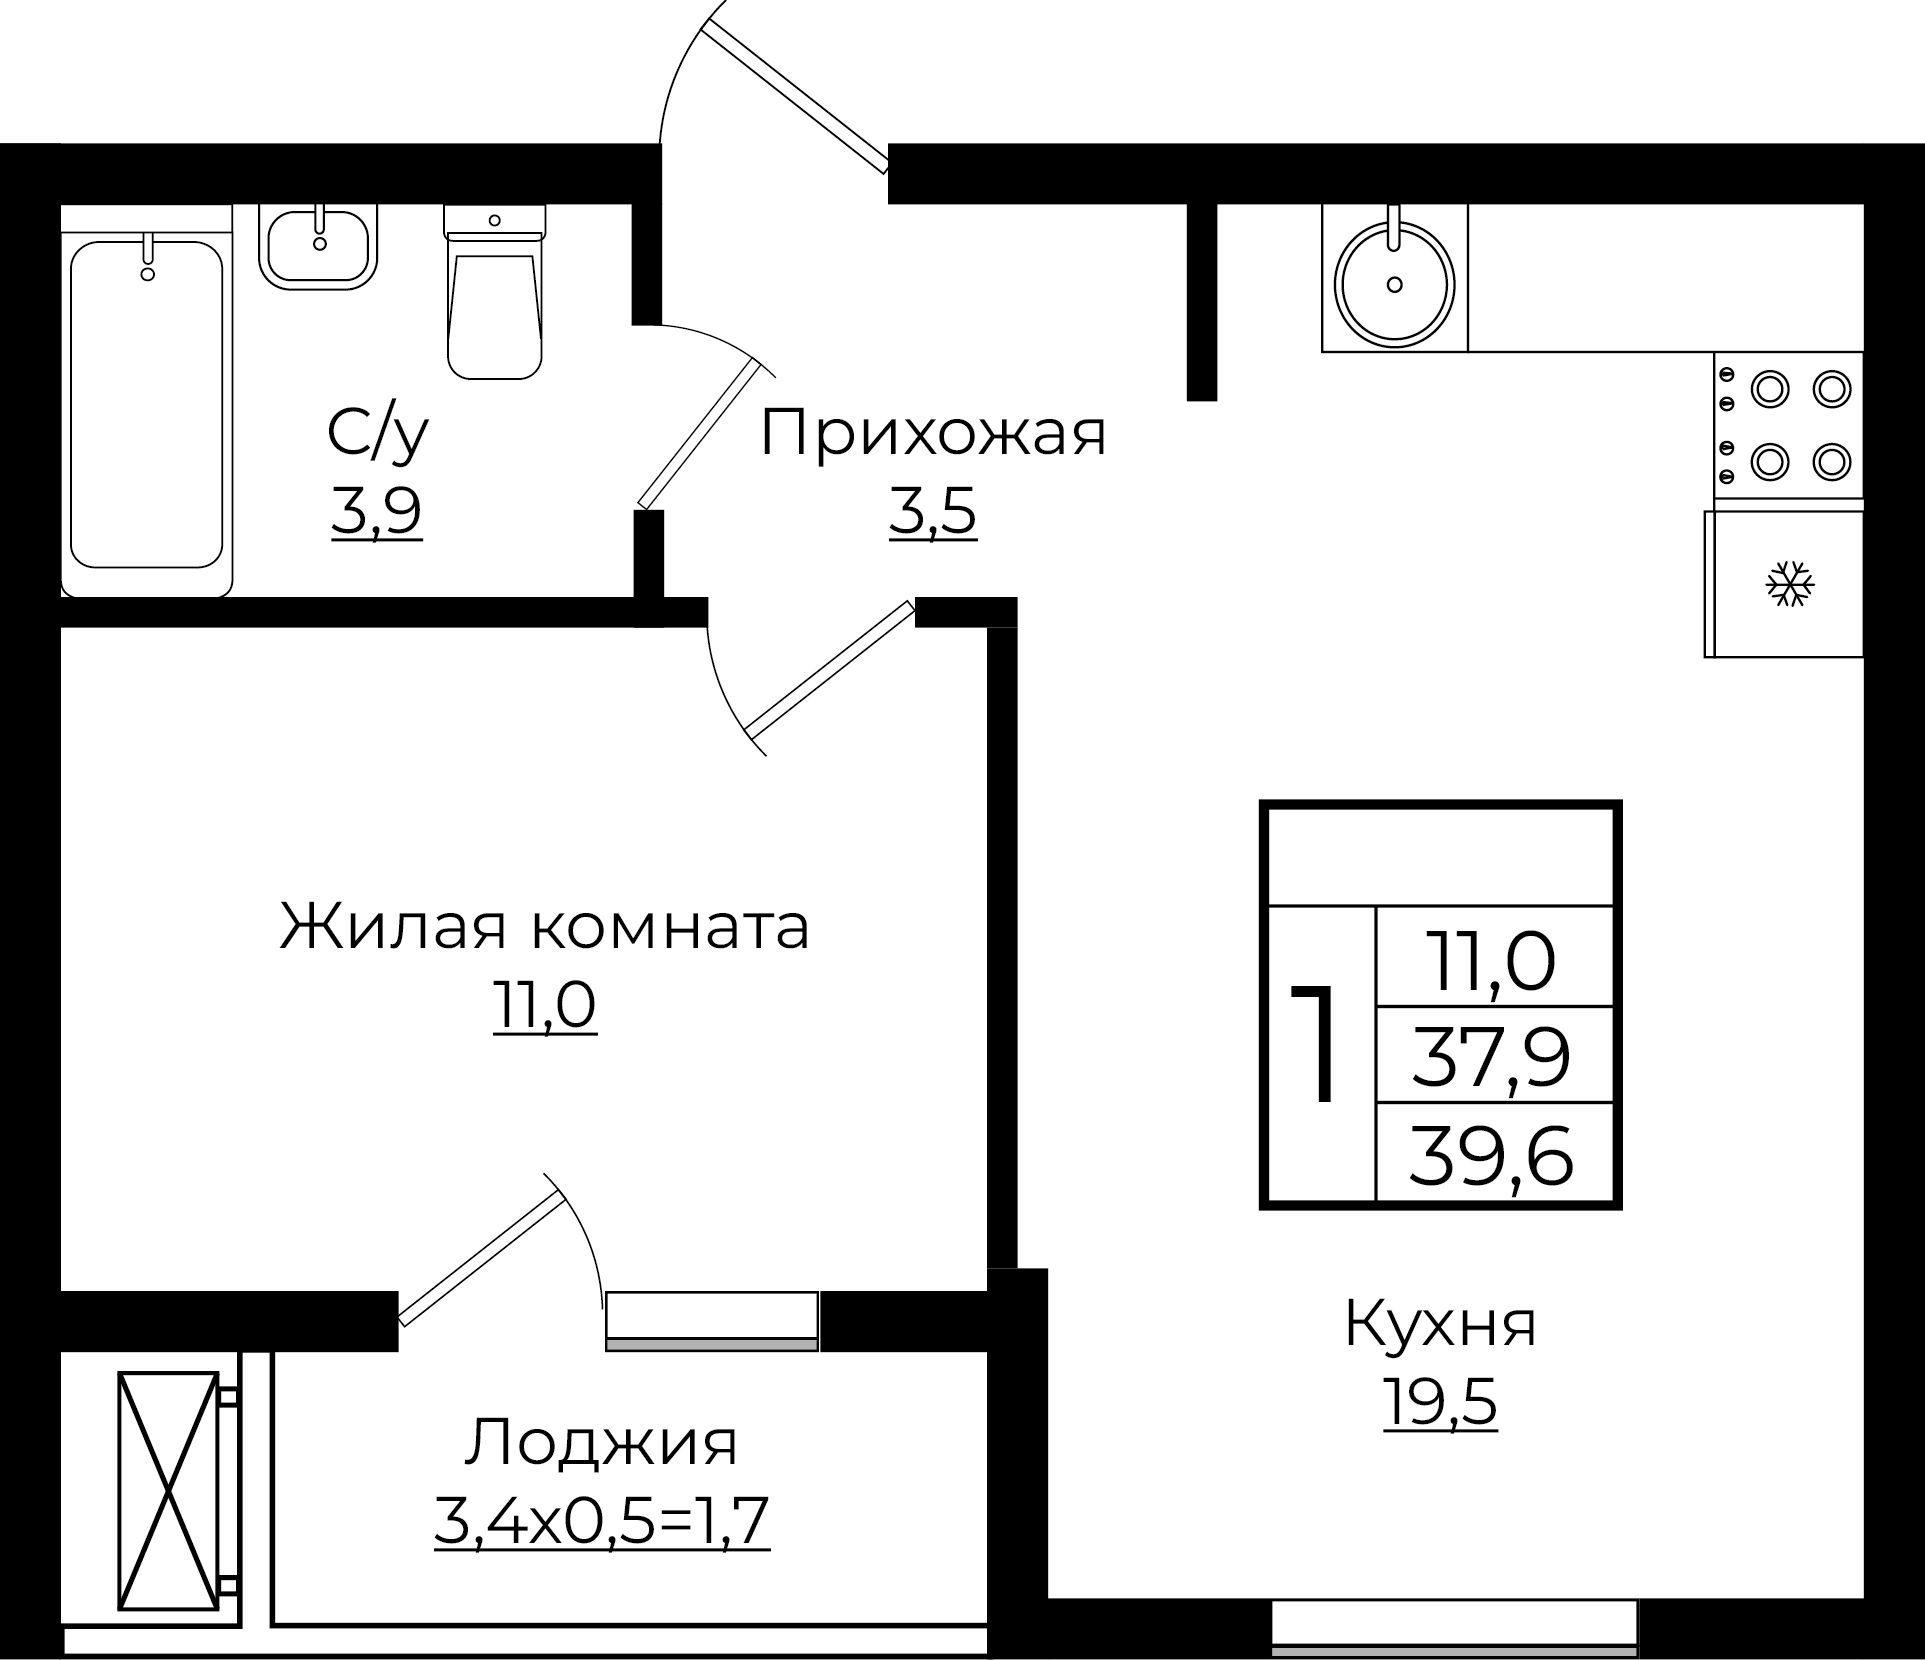 1-комнатная 39.6 м2